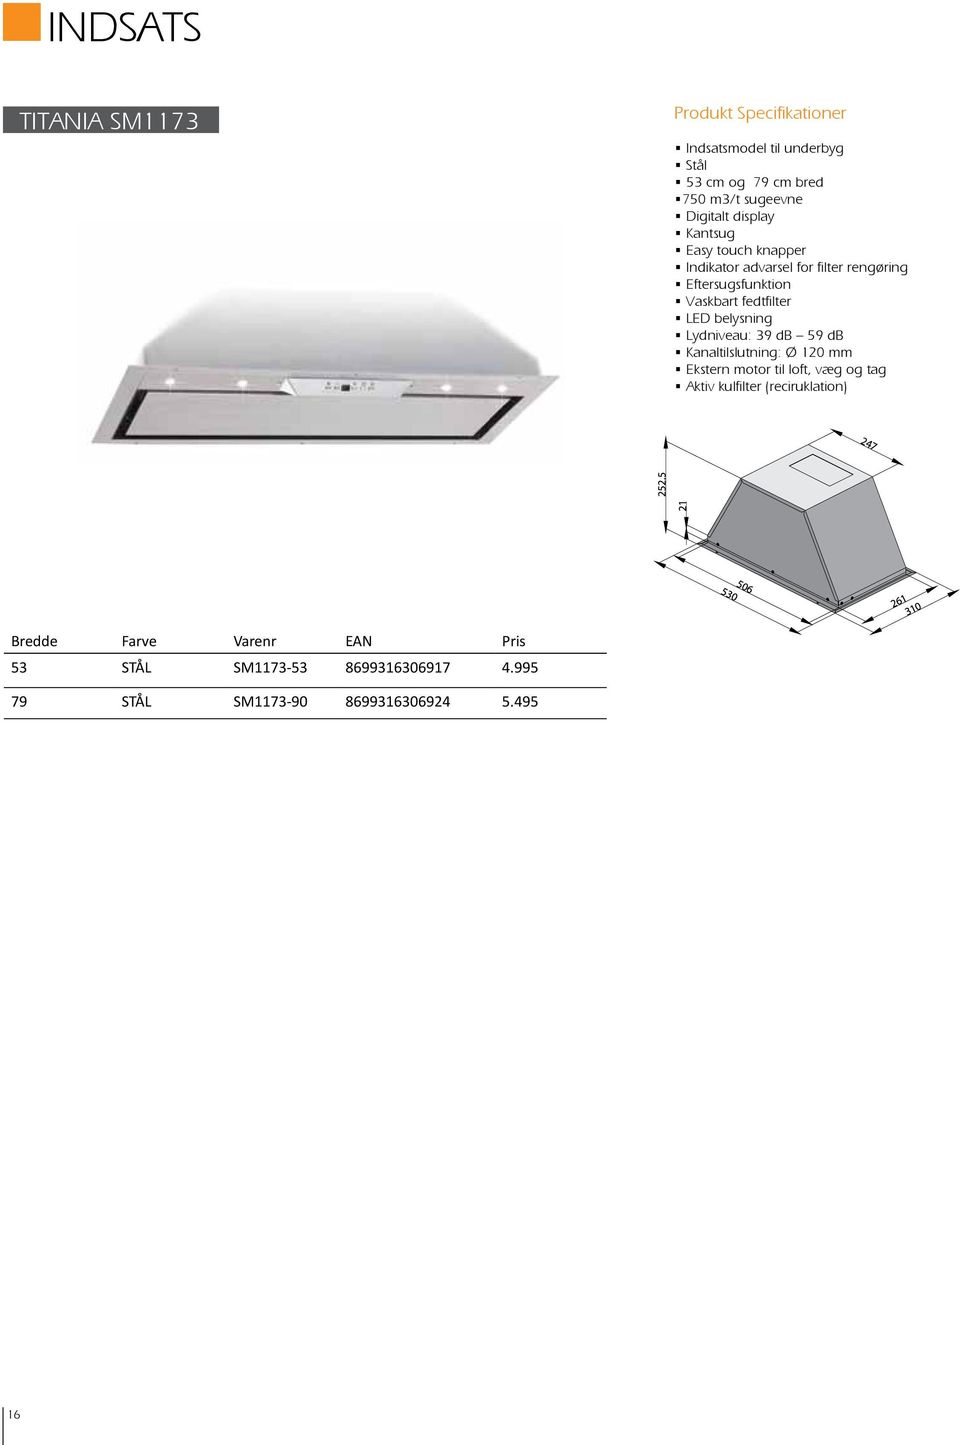 fedtfilter LED belysning Lydniveau: 39 db 59 db Kanaltilslutning: Ø 1 mm Ekstern motor til loft, væg og